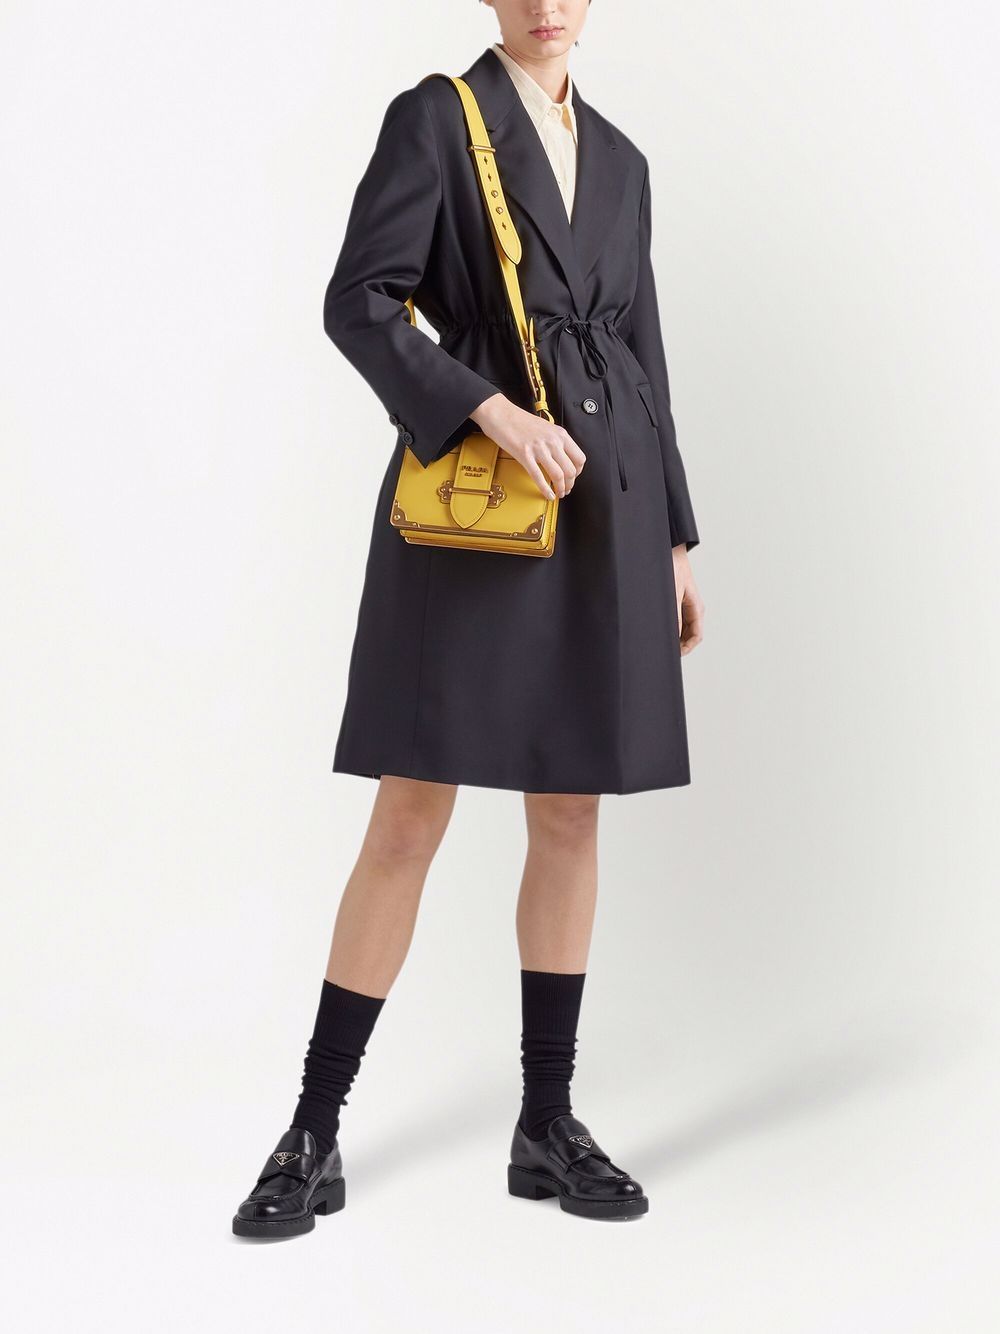 Herbst Trend Tasche Prada Cahier Bag, schwarzes Maxikleid & Zara Pullover –  BrinisFashionBook